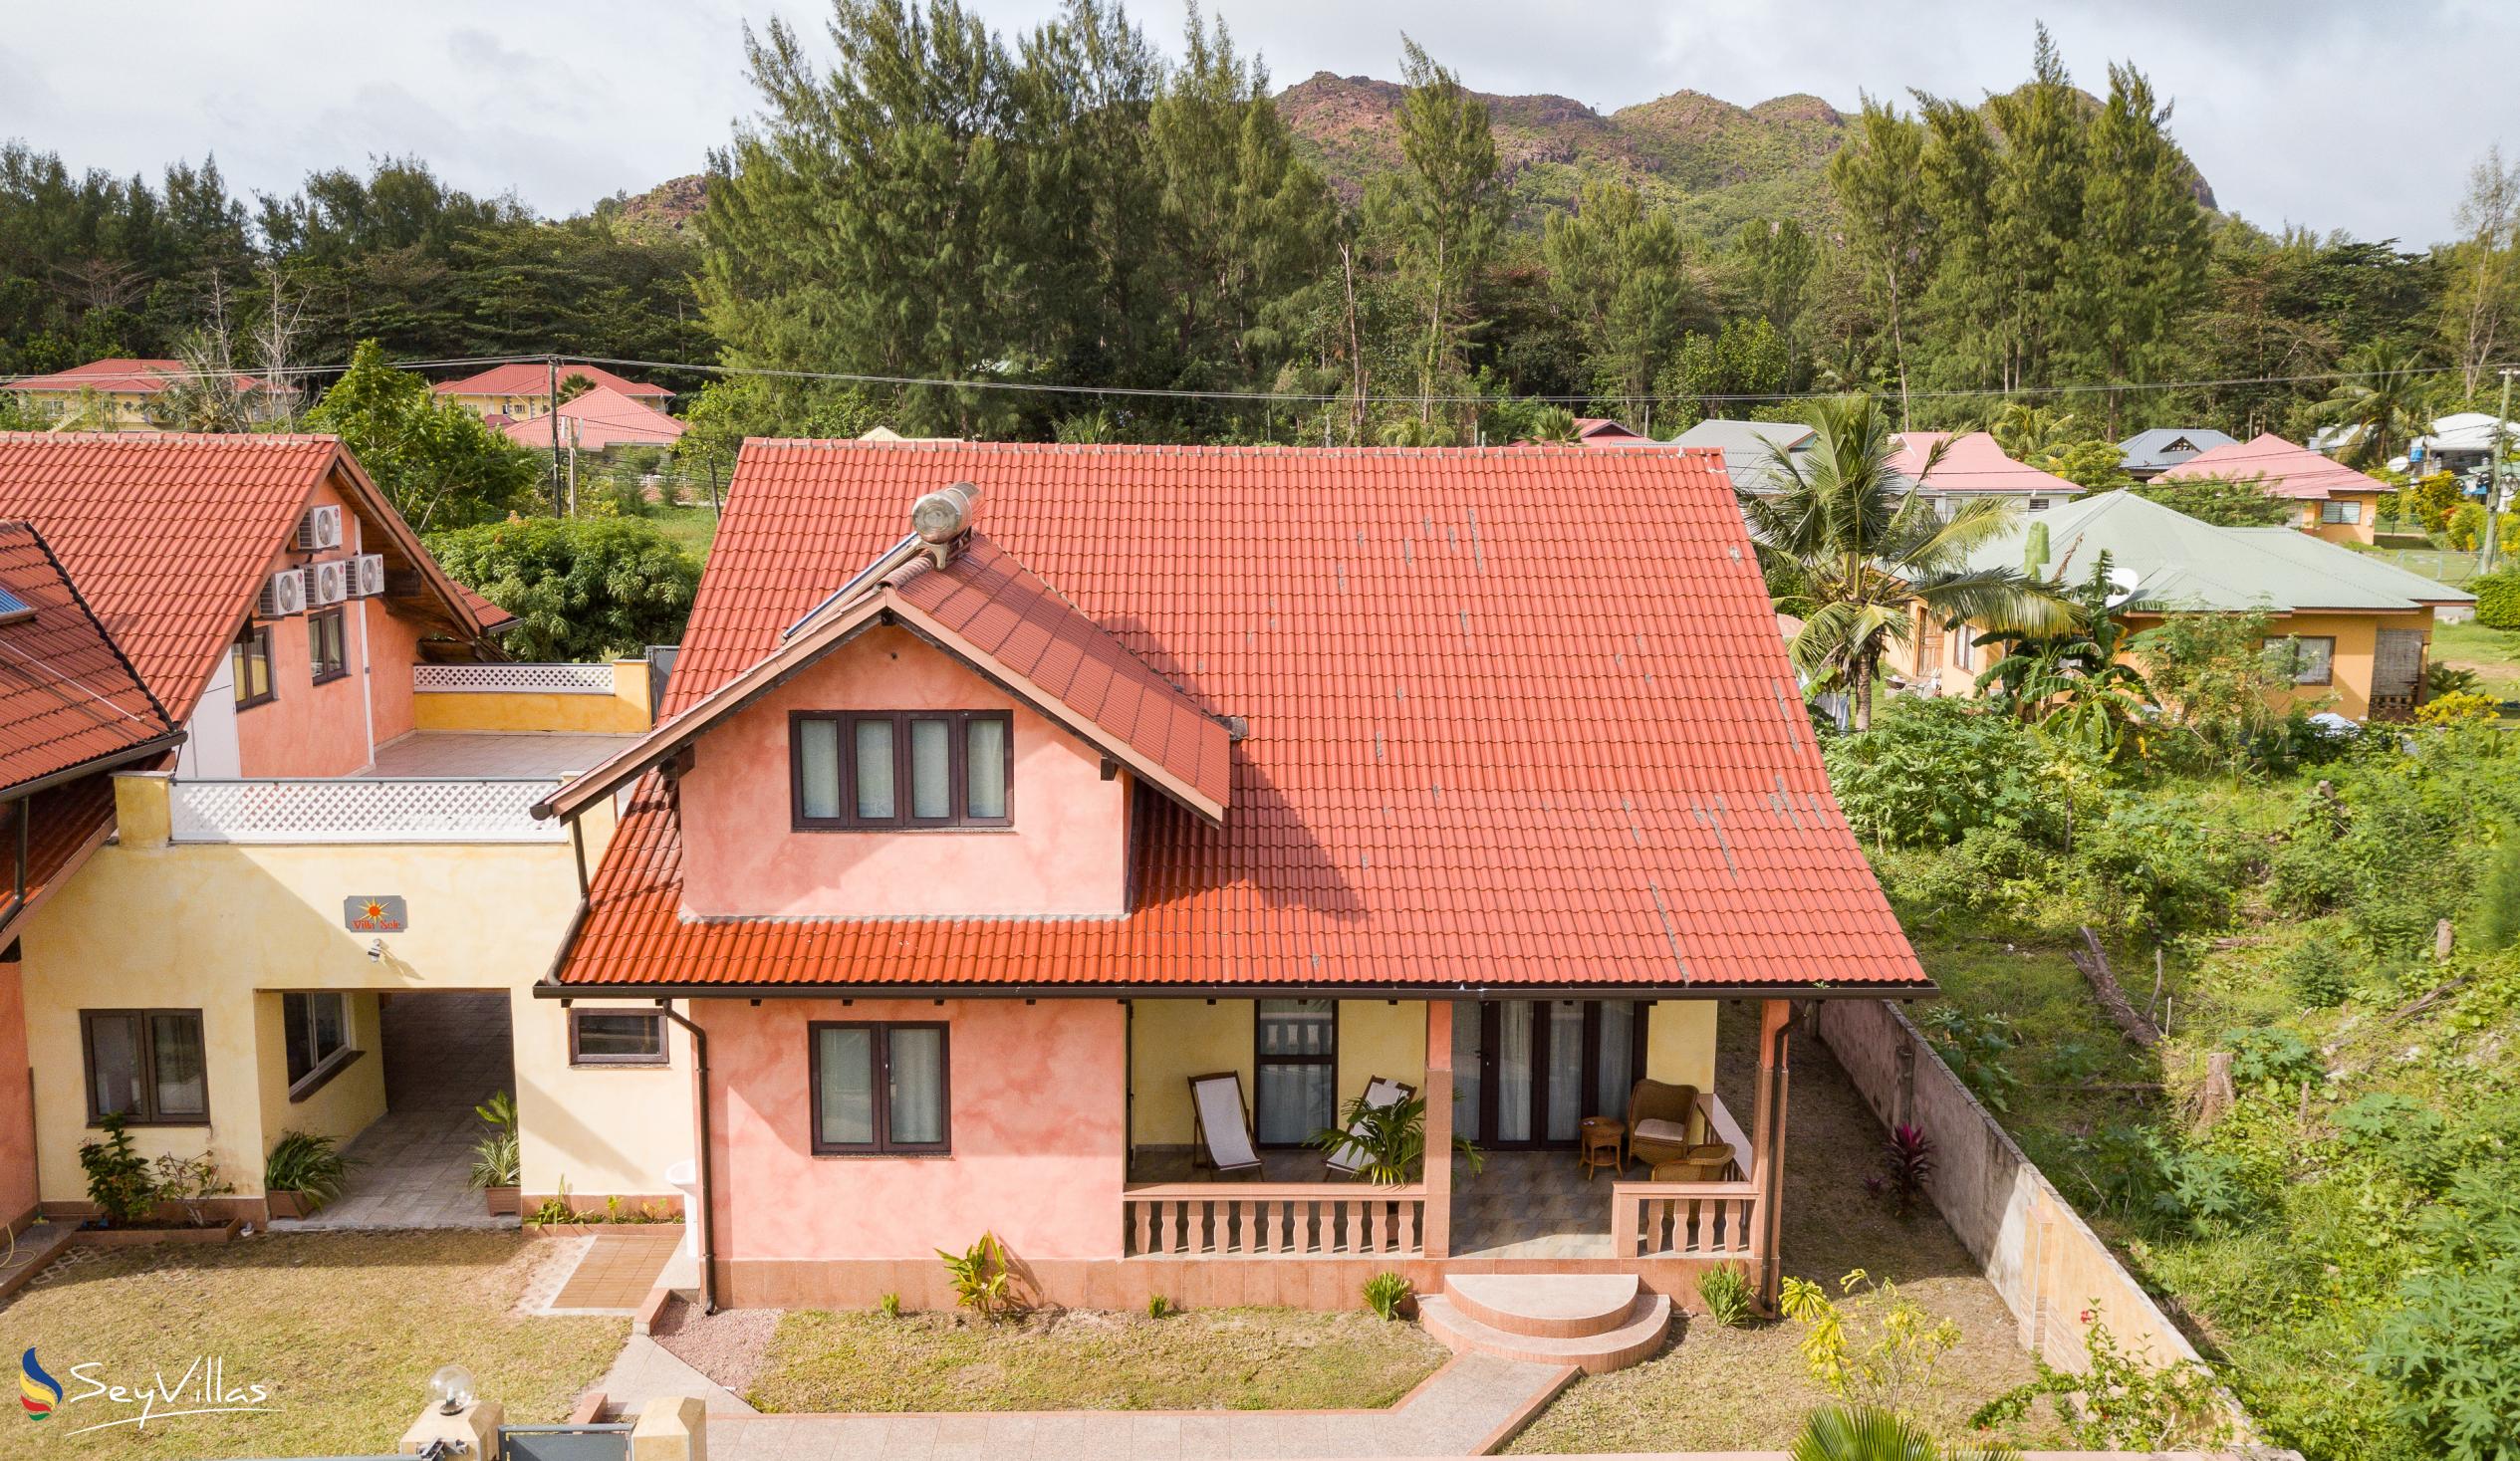 Foto 5: Villa Sole - Aussenbereich - Praslin (Seychellen)